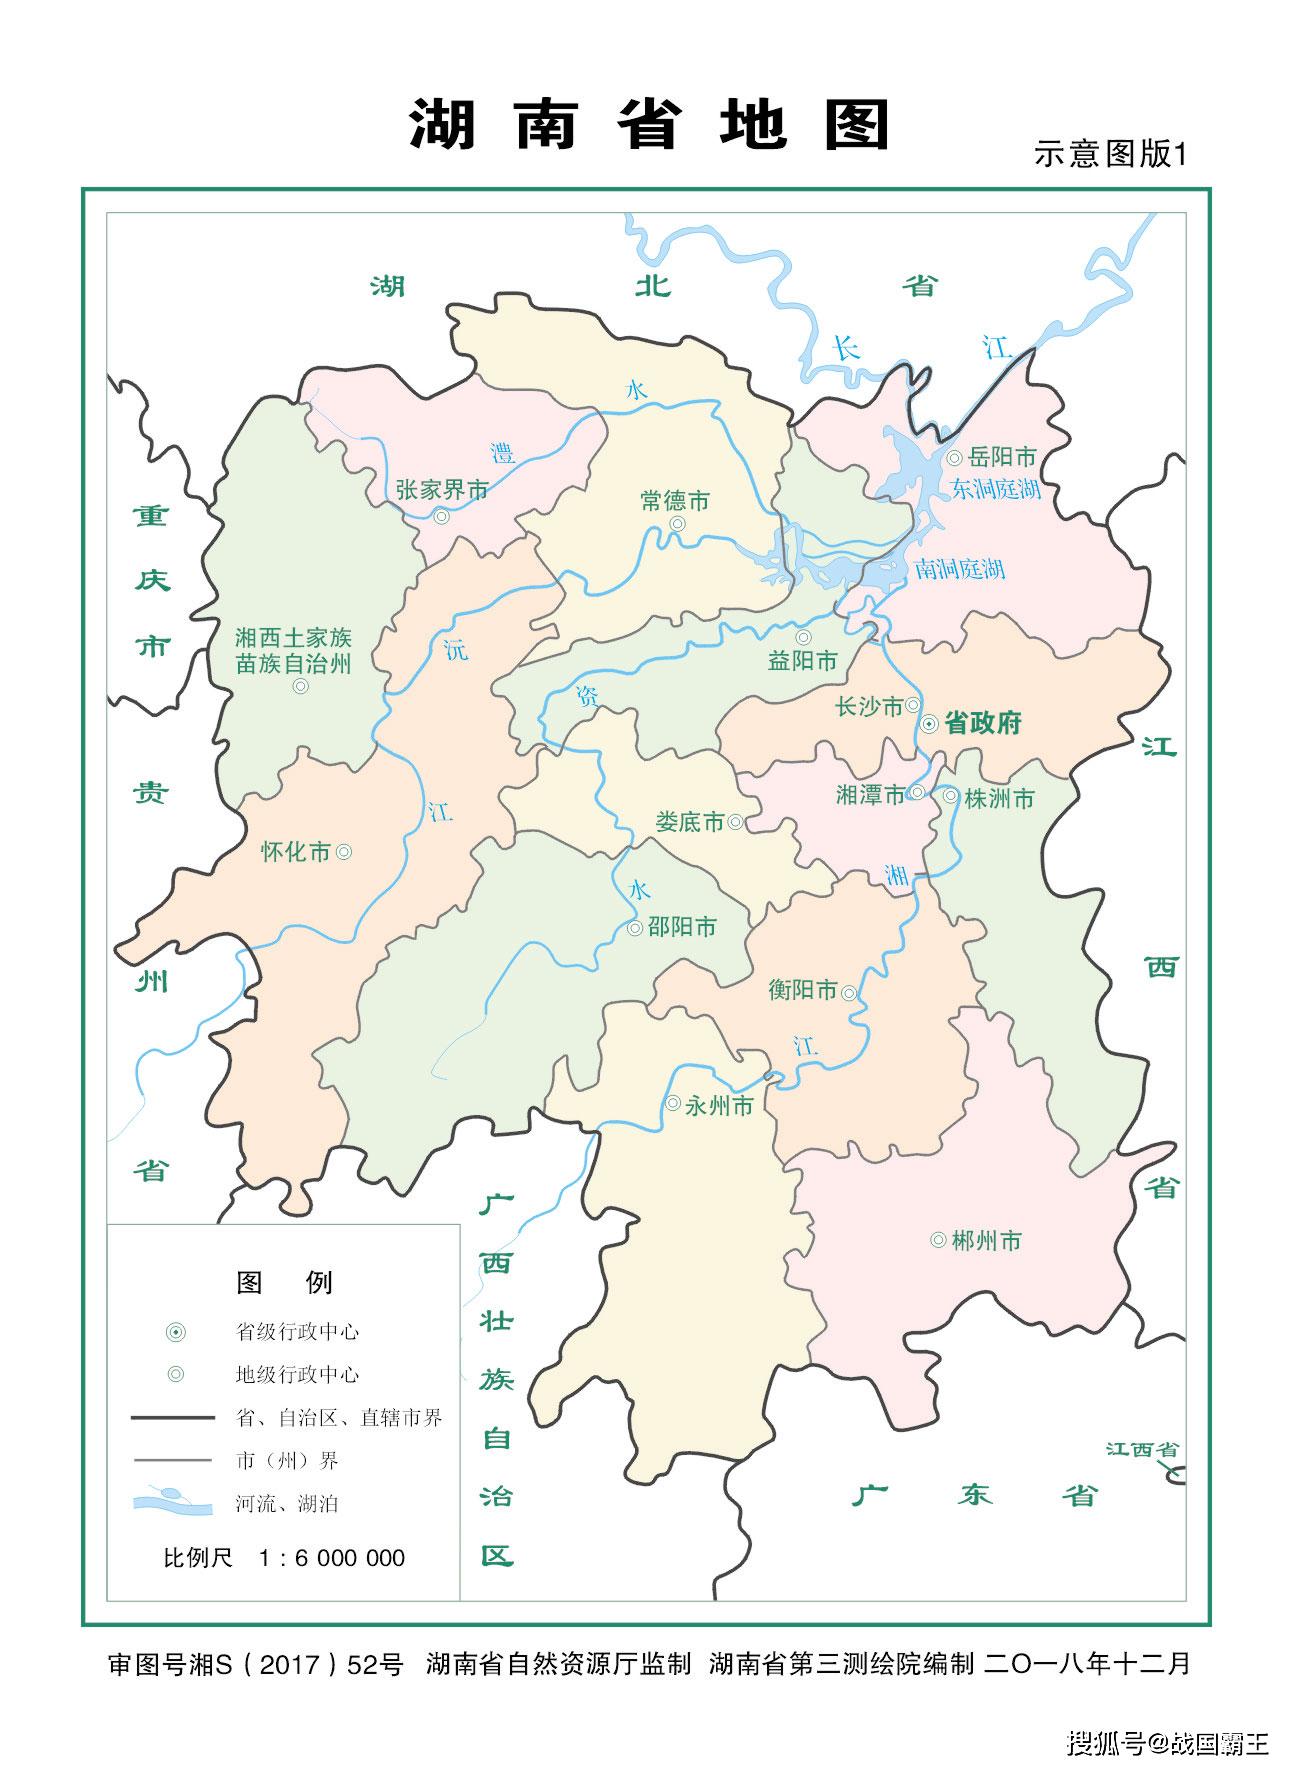 湖南省的东边是江西省,西边是重庆市和贵州省,南边是广东省和广西壮族